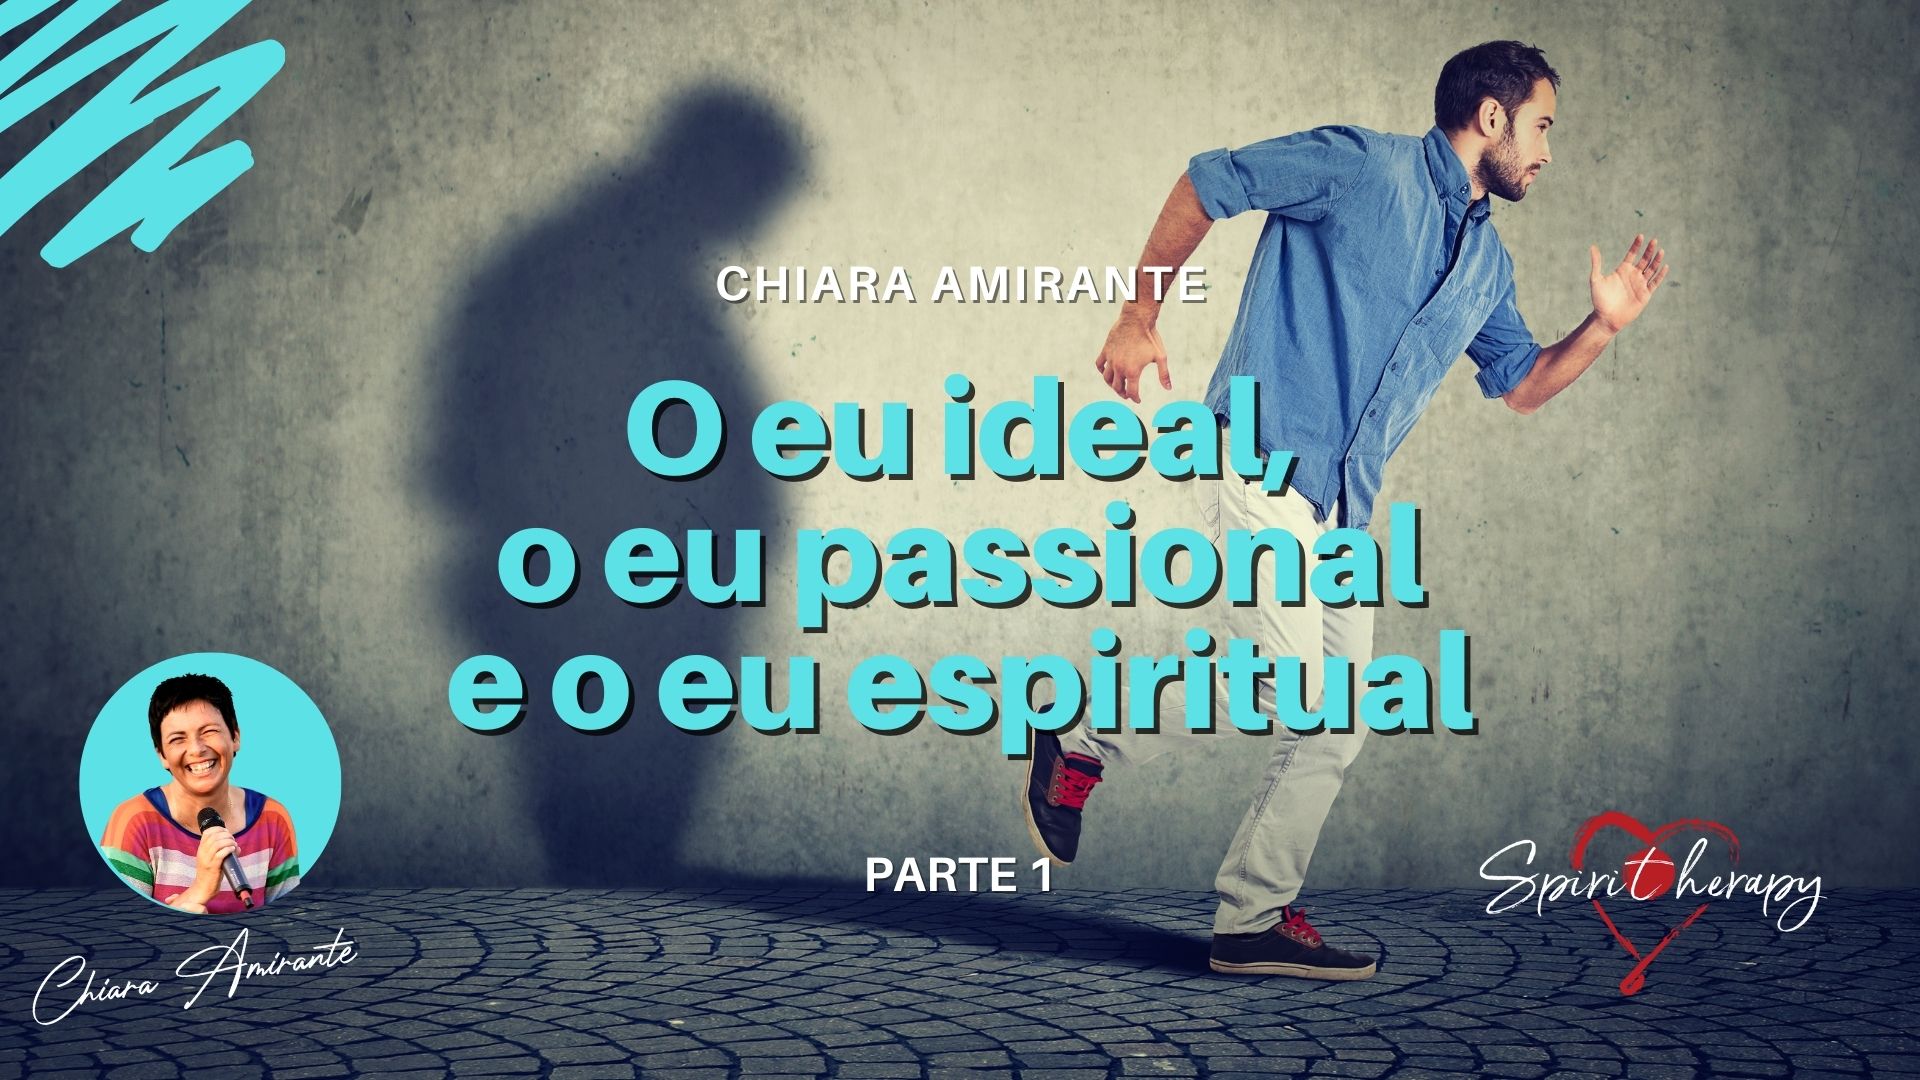 O eu ideal, o eu passional, o ser espiritual (1) - Chiara Amirante